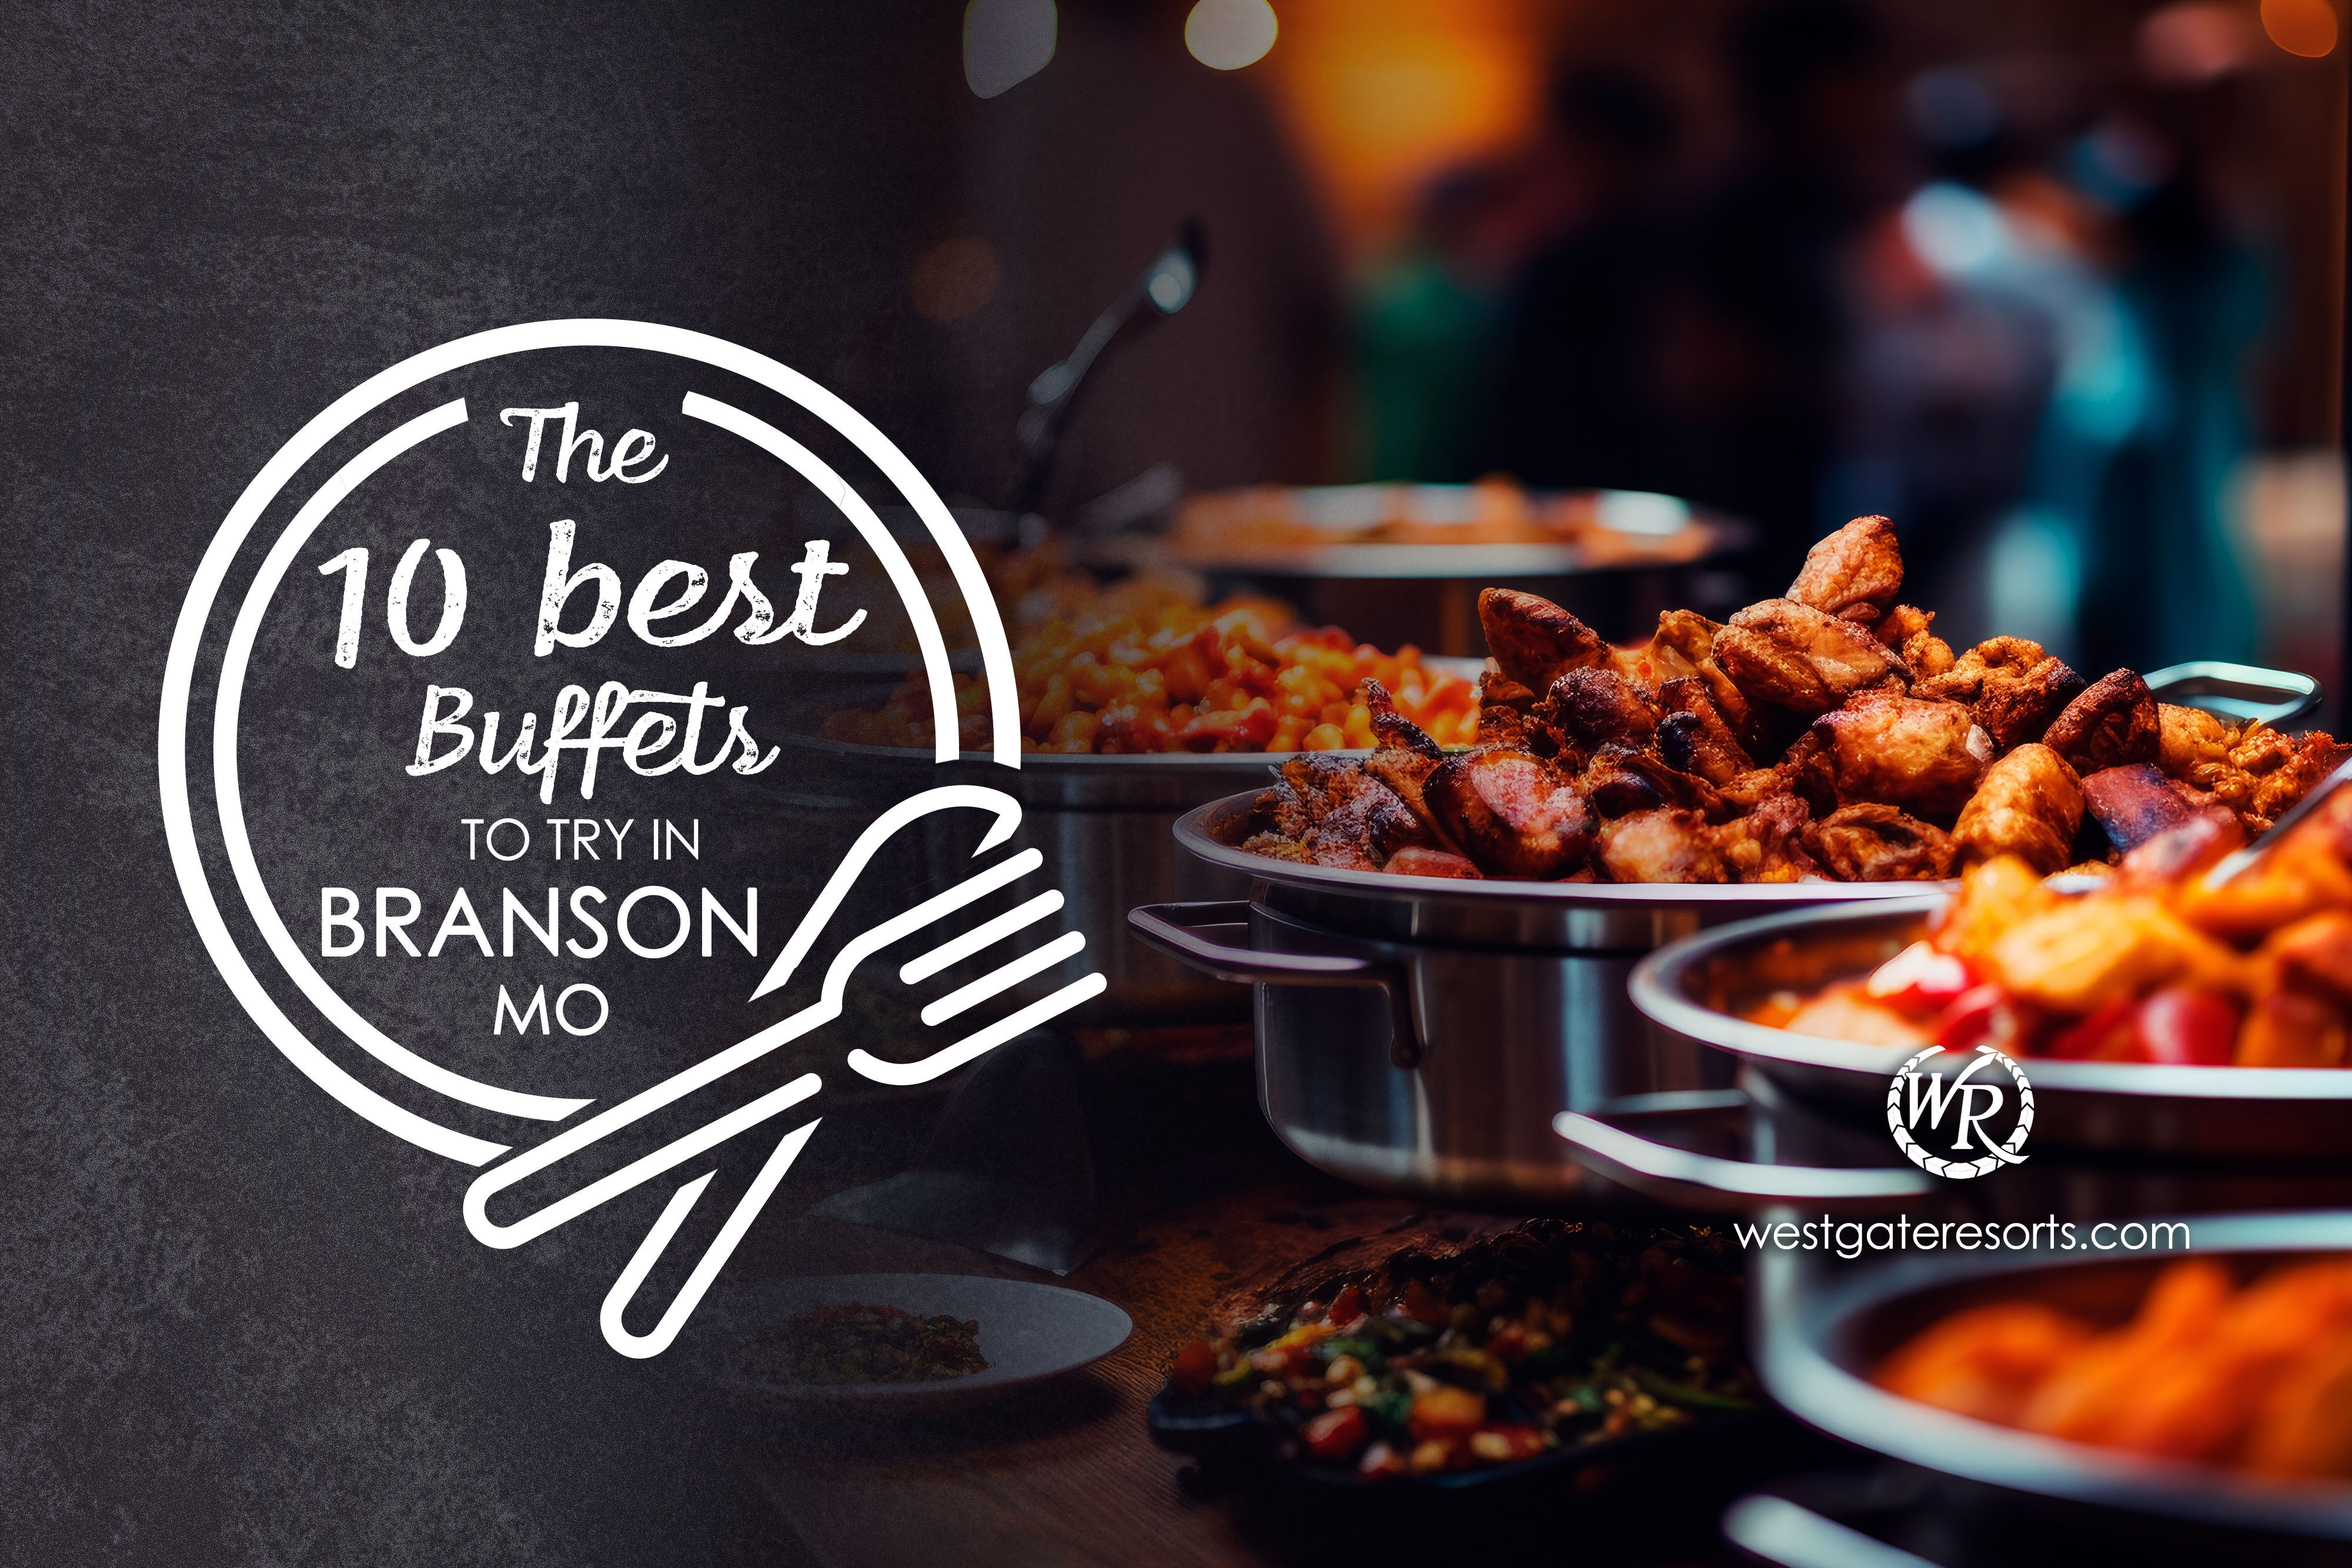 10 Best Buffets in Branson MO